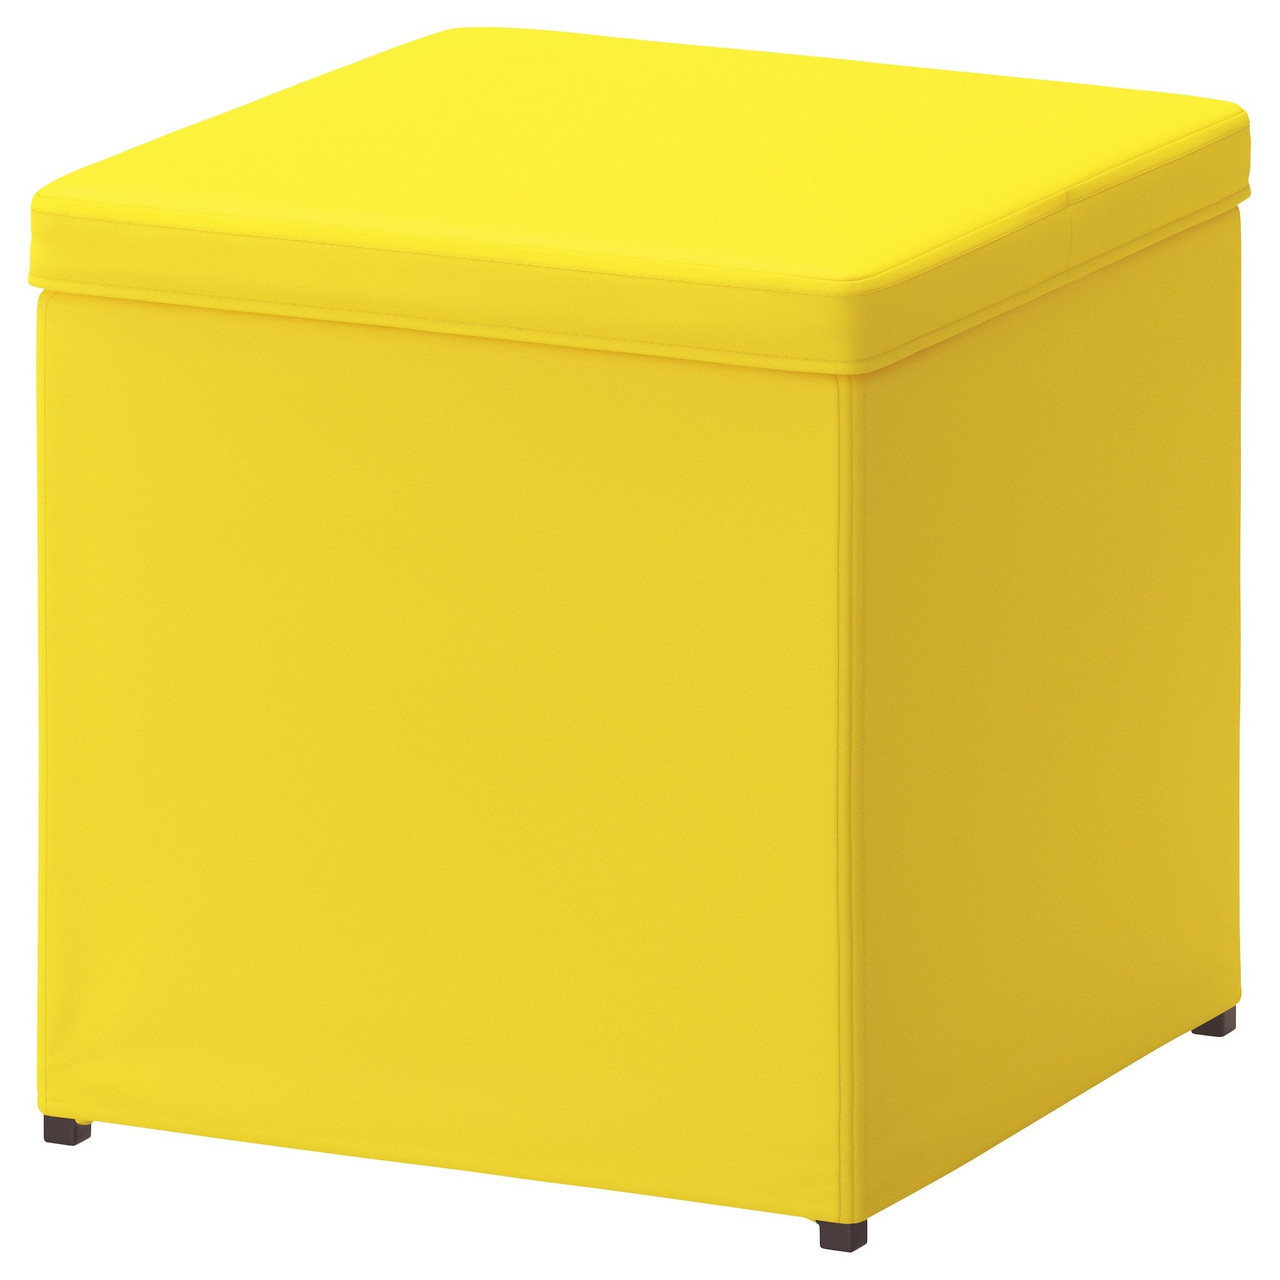 Табурет для ног БОСНЭС с ящиком для хранения, жёлтый ИКЕА, IKEA  